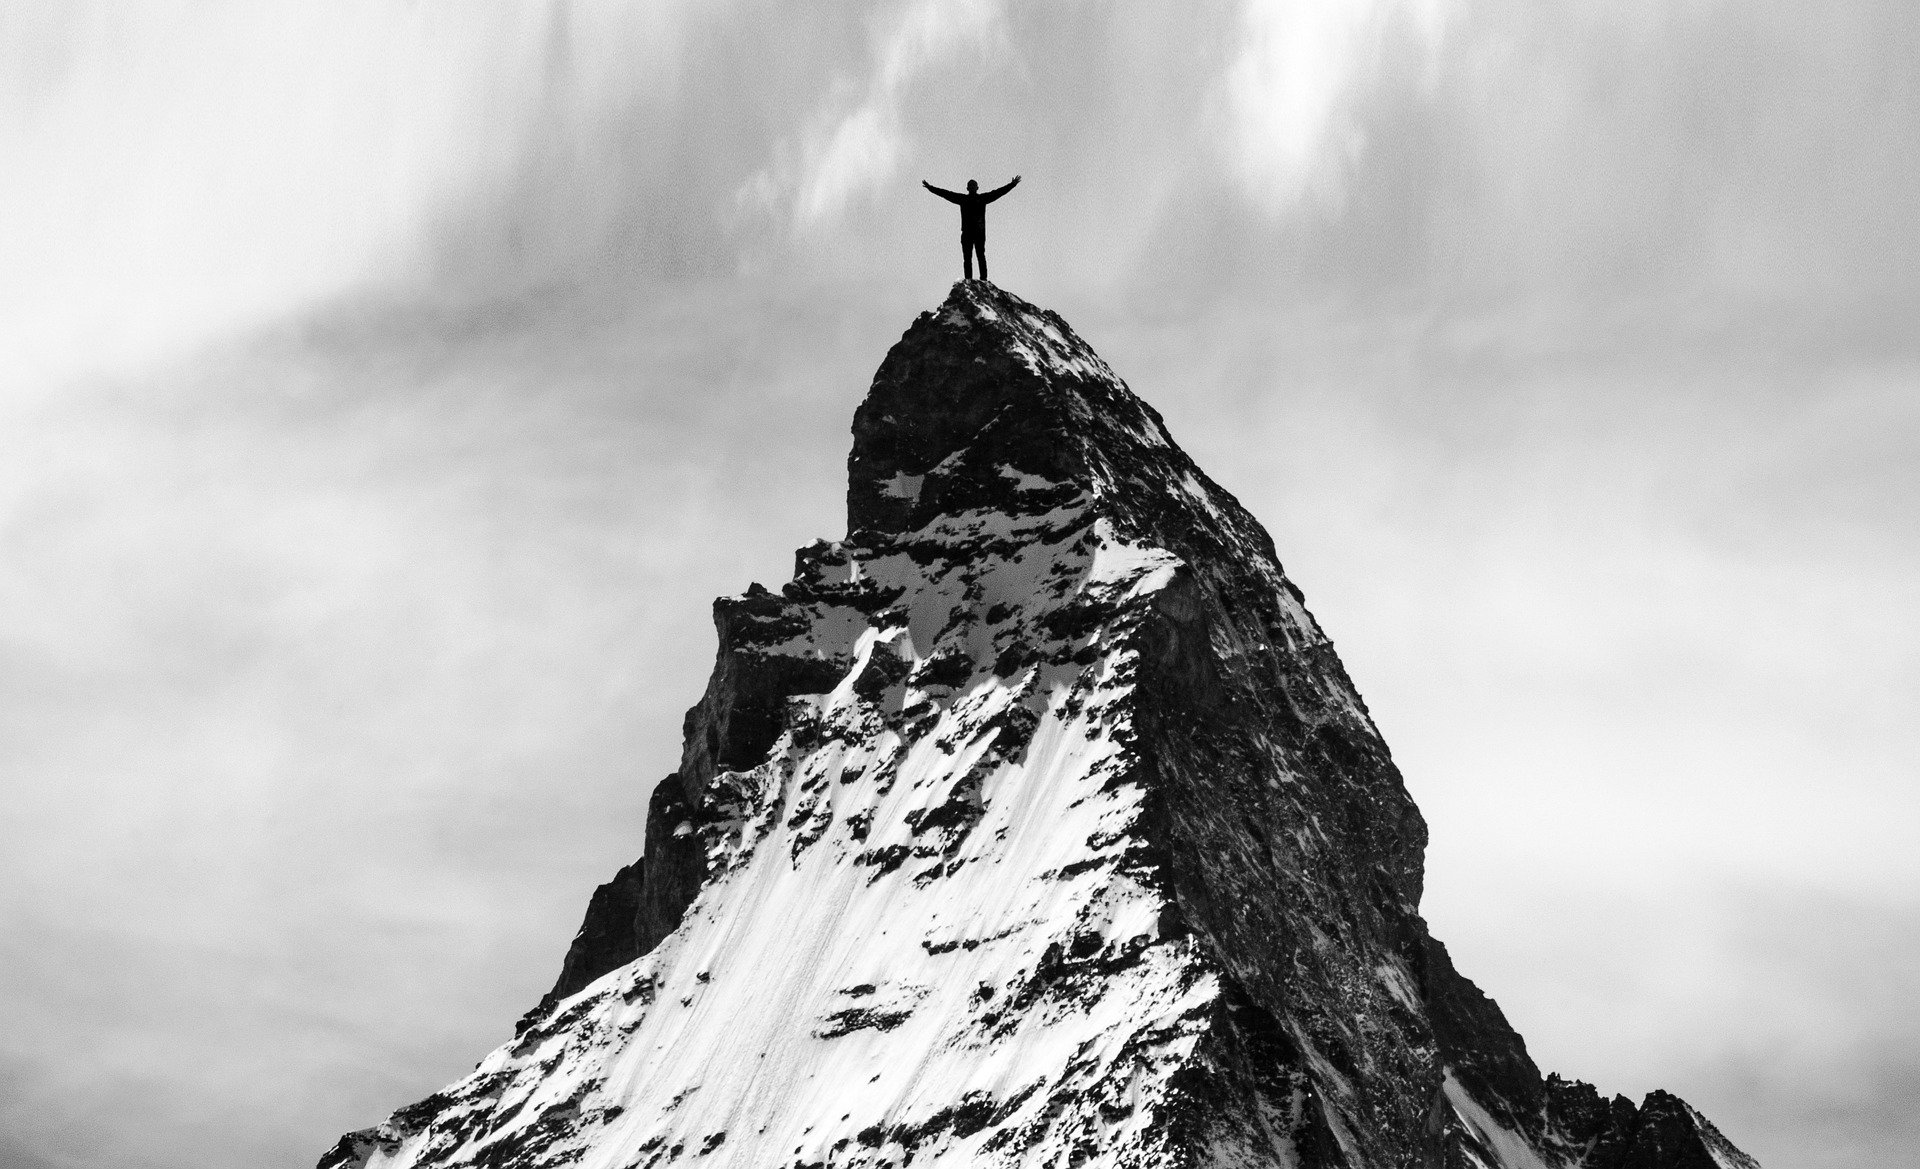 A mountian climber reaches his goal.